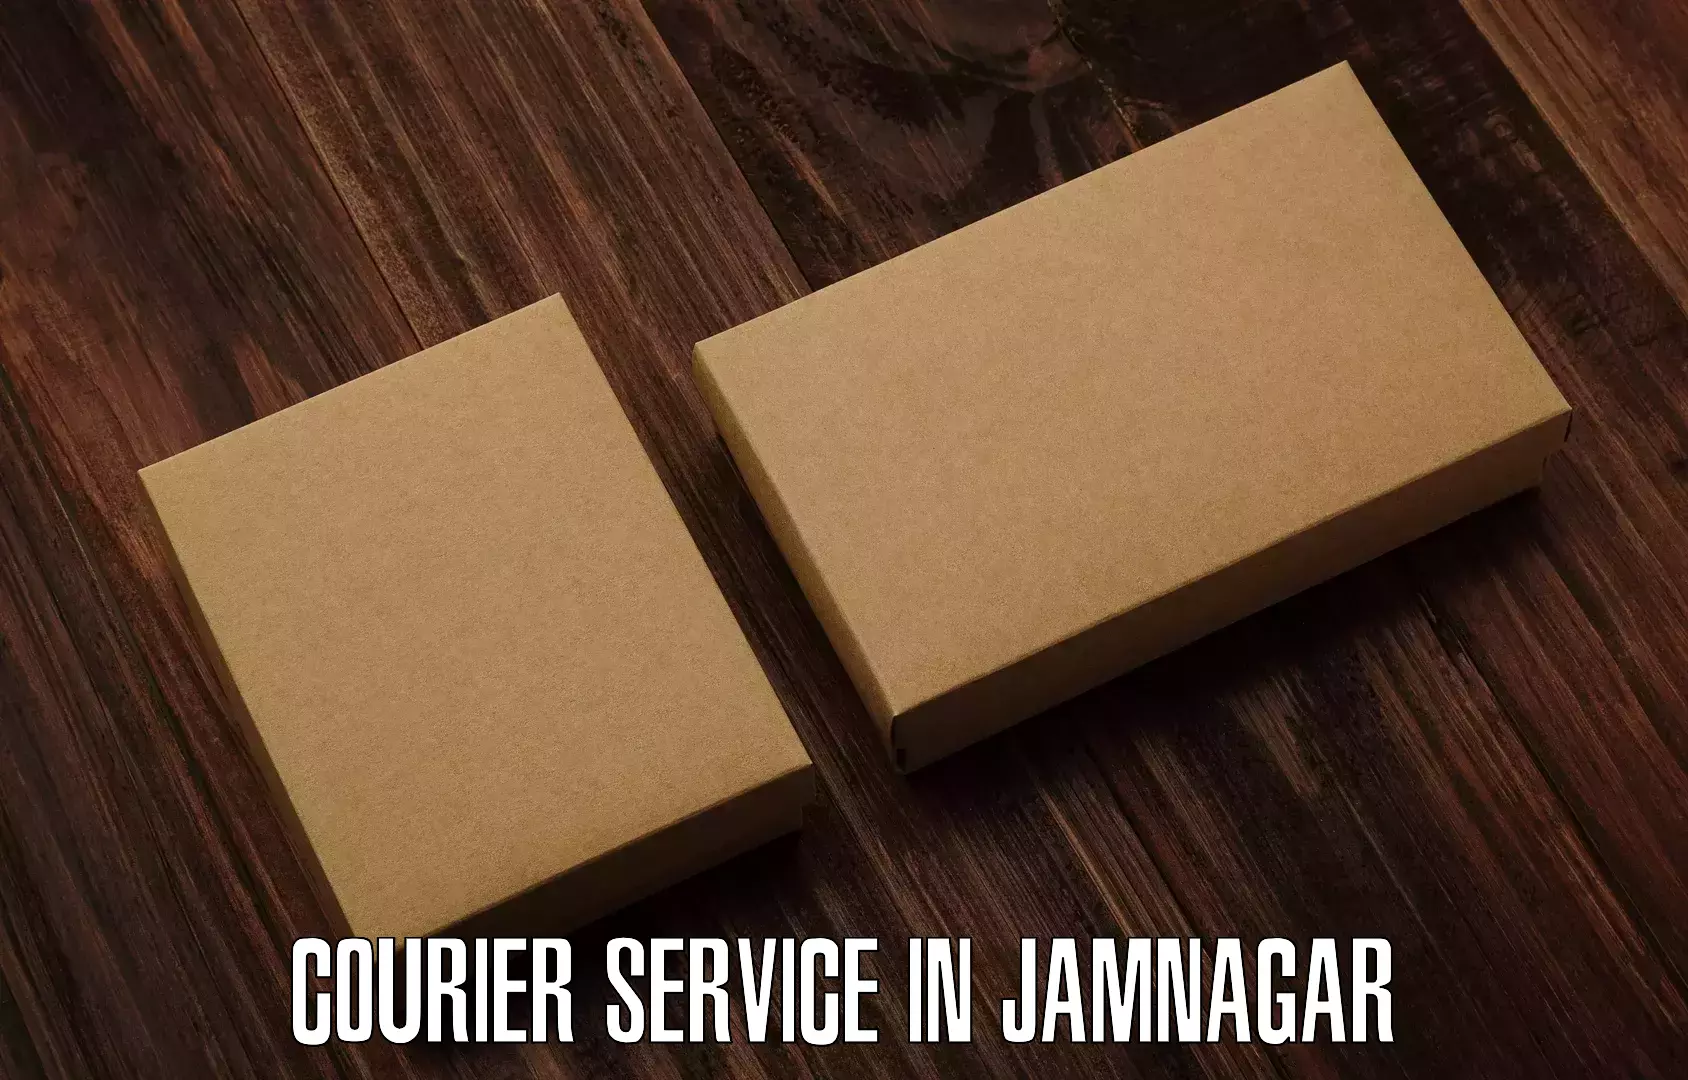 Efficient cargo services in Jamnagar